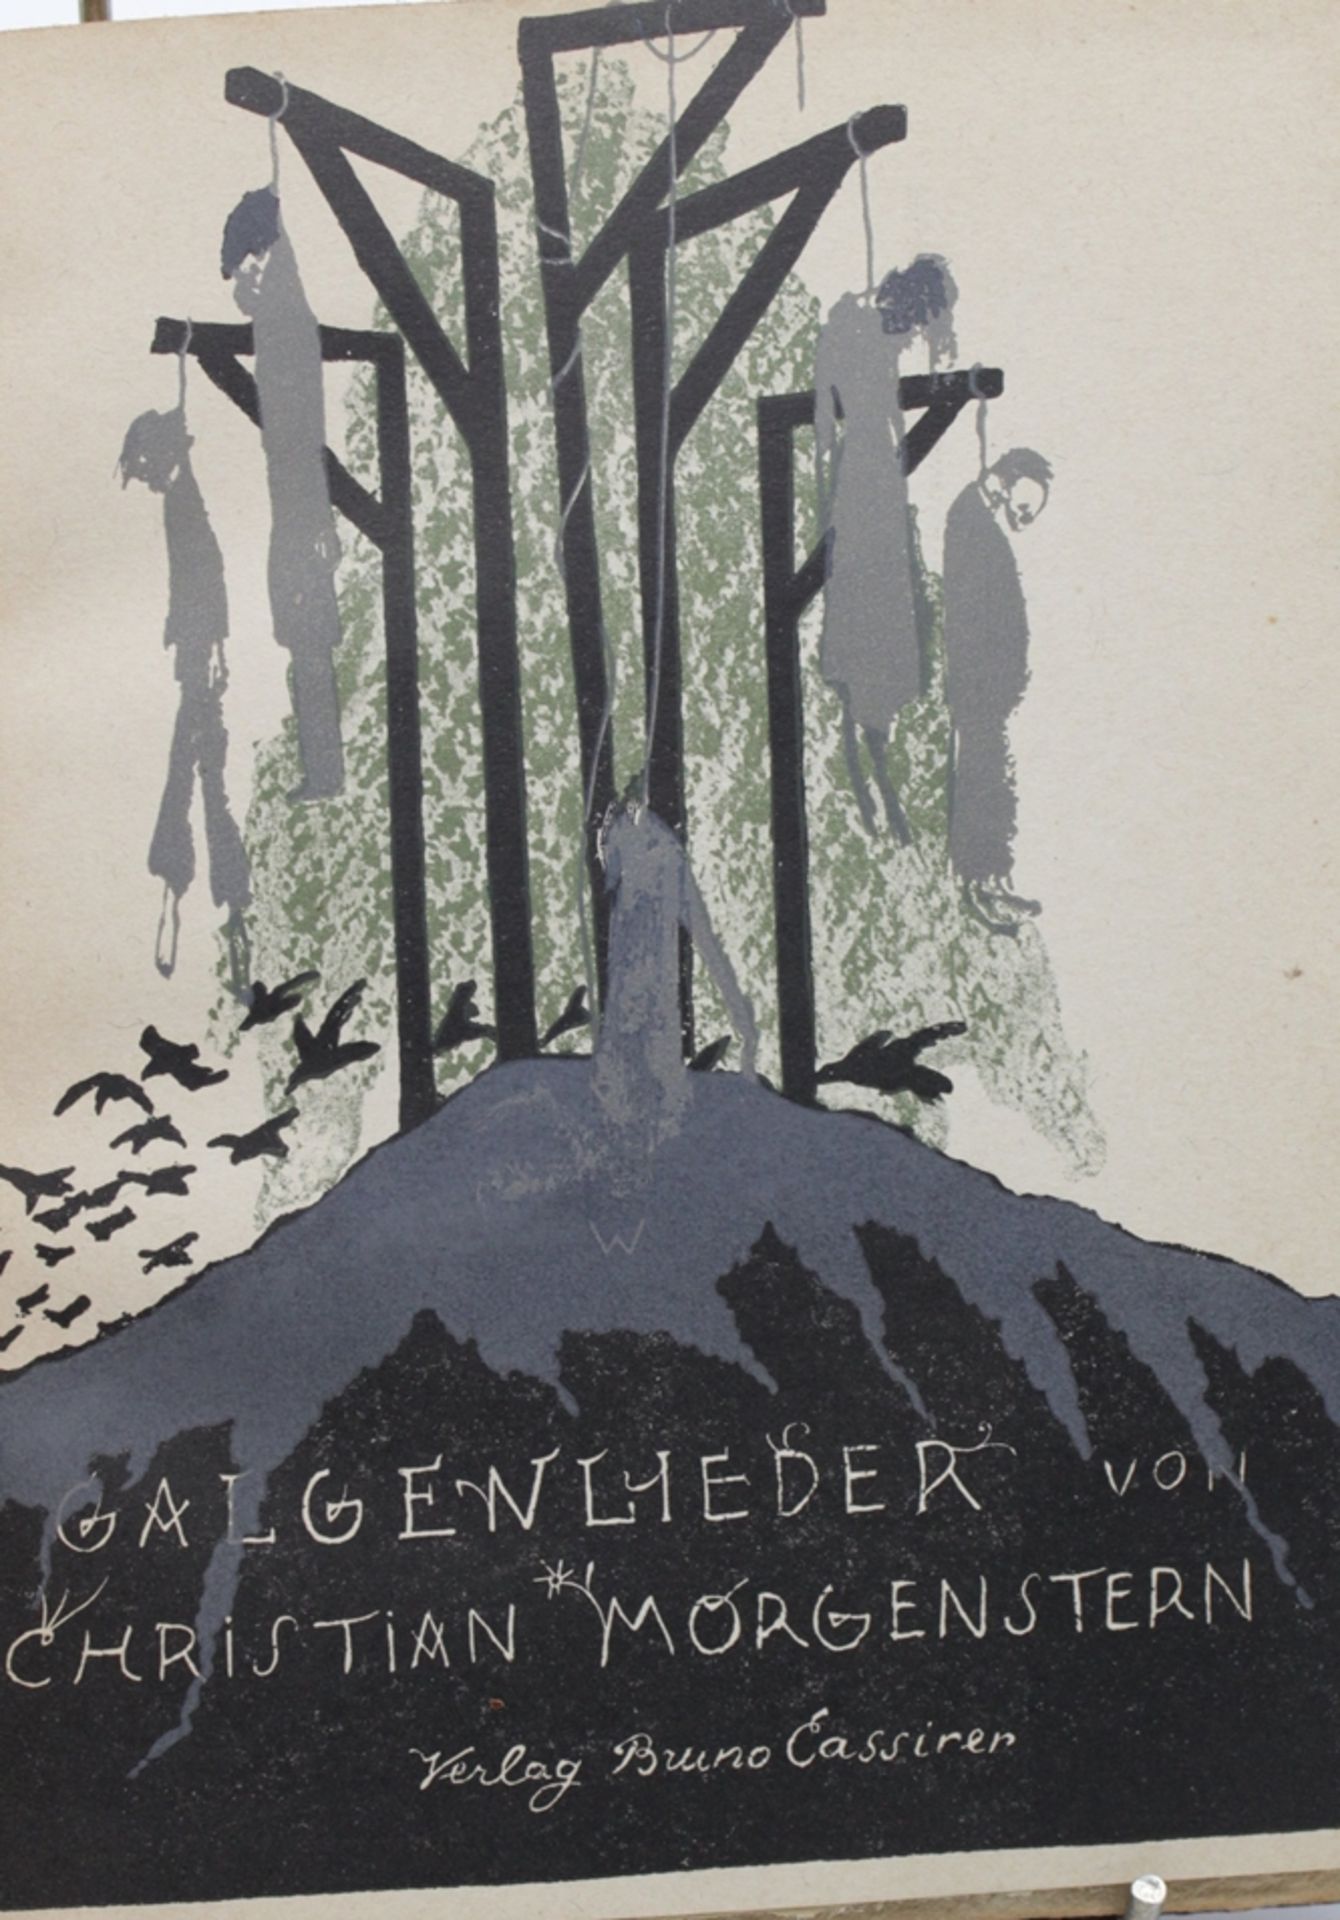 Christian Morgenstern, Galgenlieder, Berlin 1913, Einband beschädigt, Altersspuren